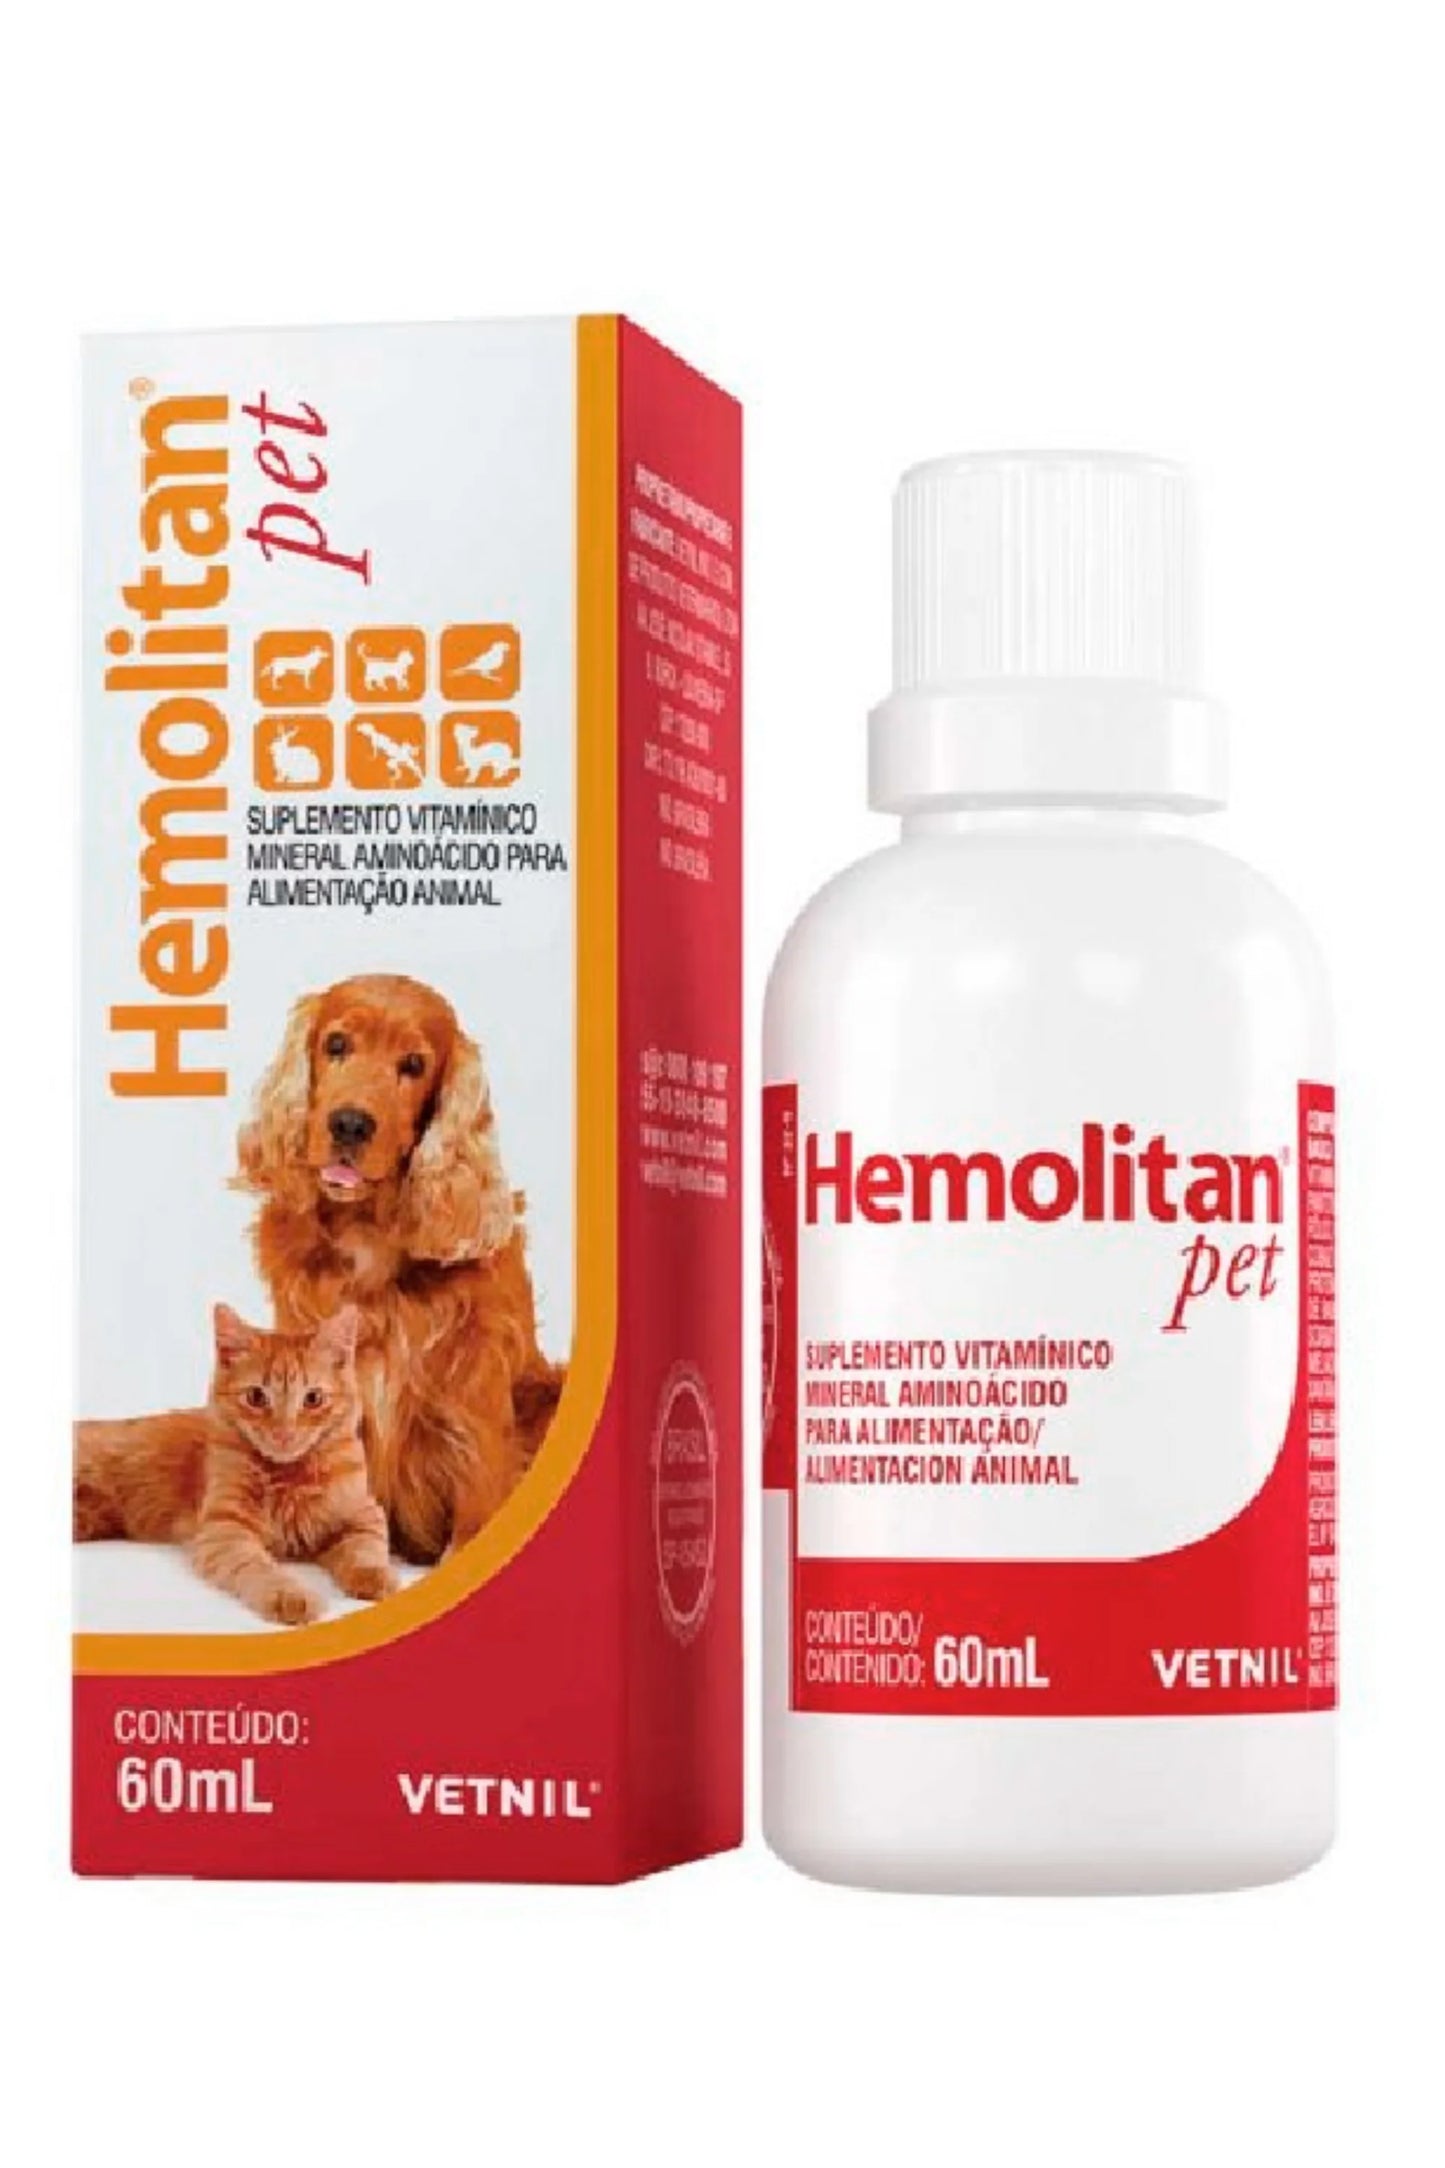 Hemolitan  Pet | Vitaminas y Minerales en alta concentración